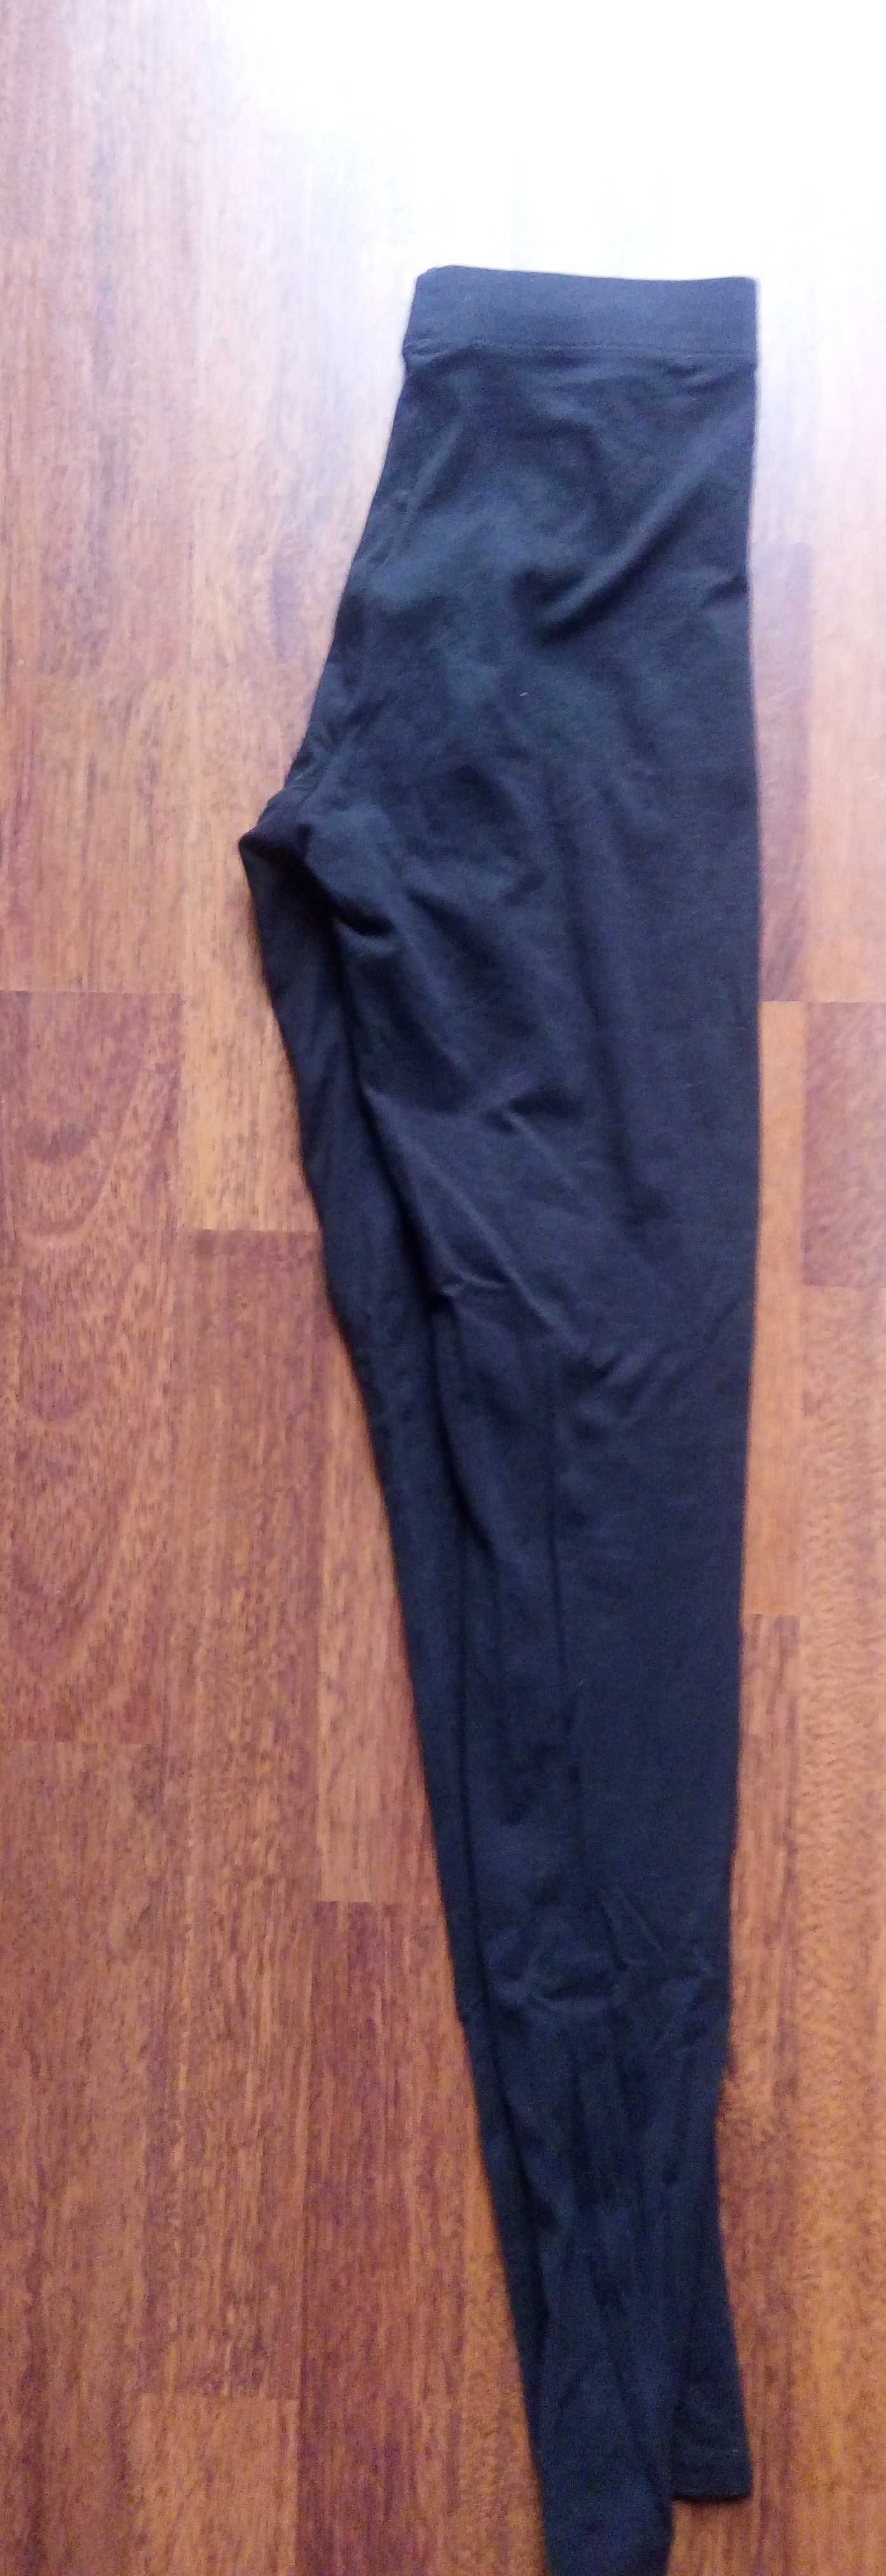 Spodnie dżinsowe r.34 GRATIS getry, koszulka i sukienka